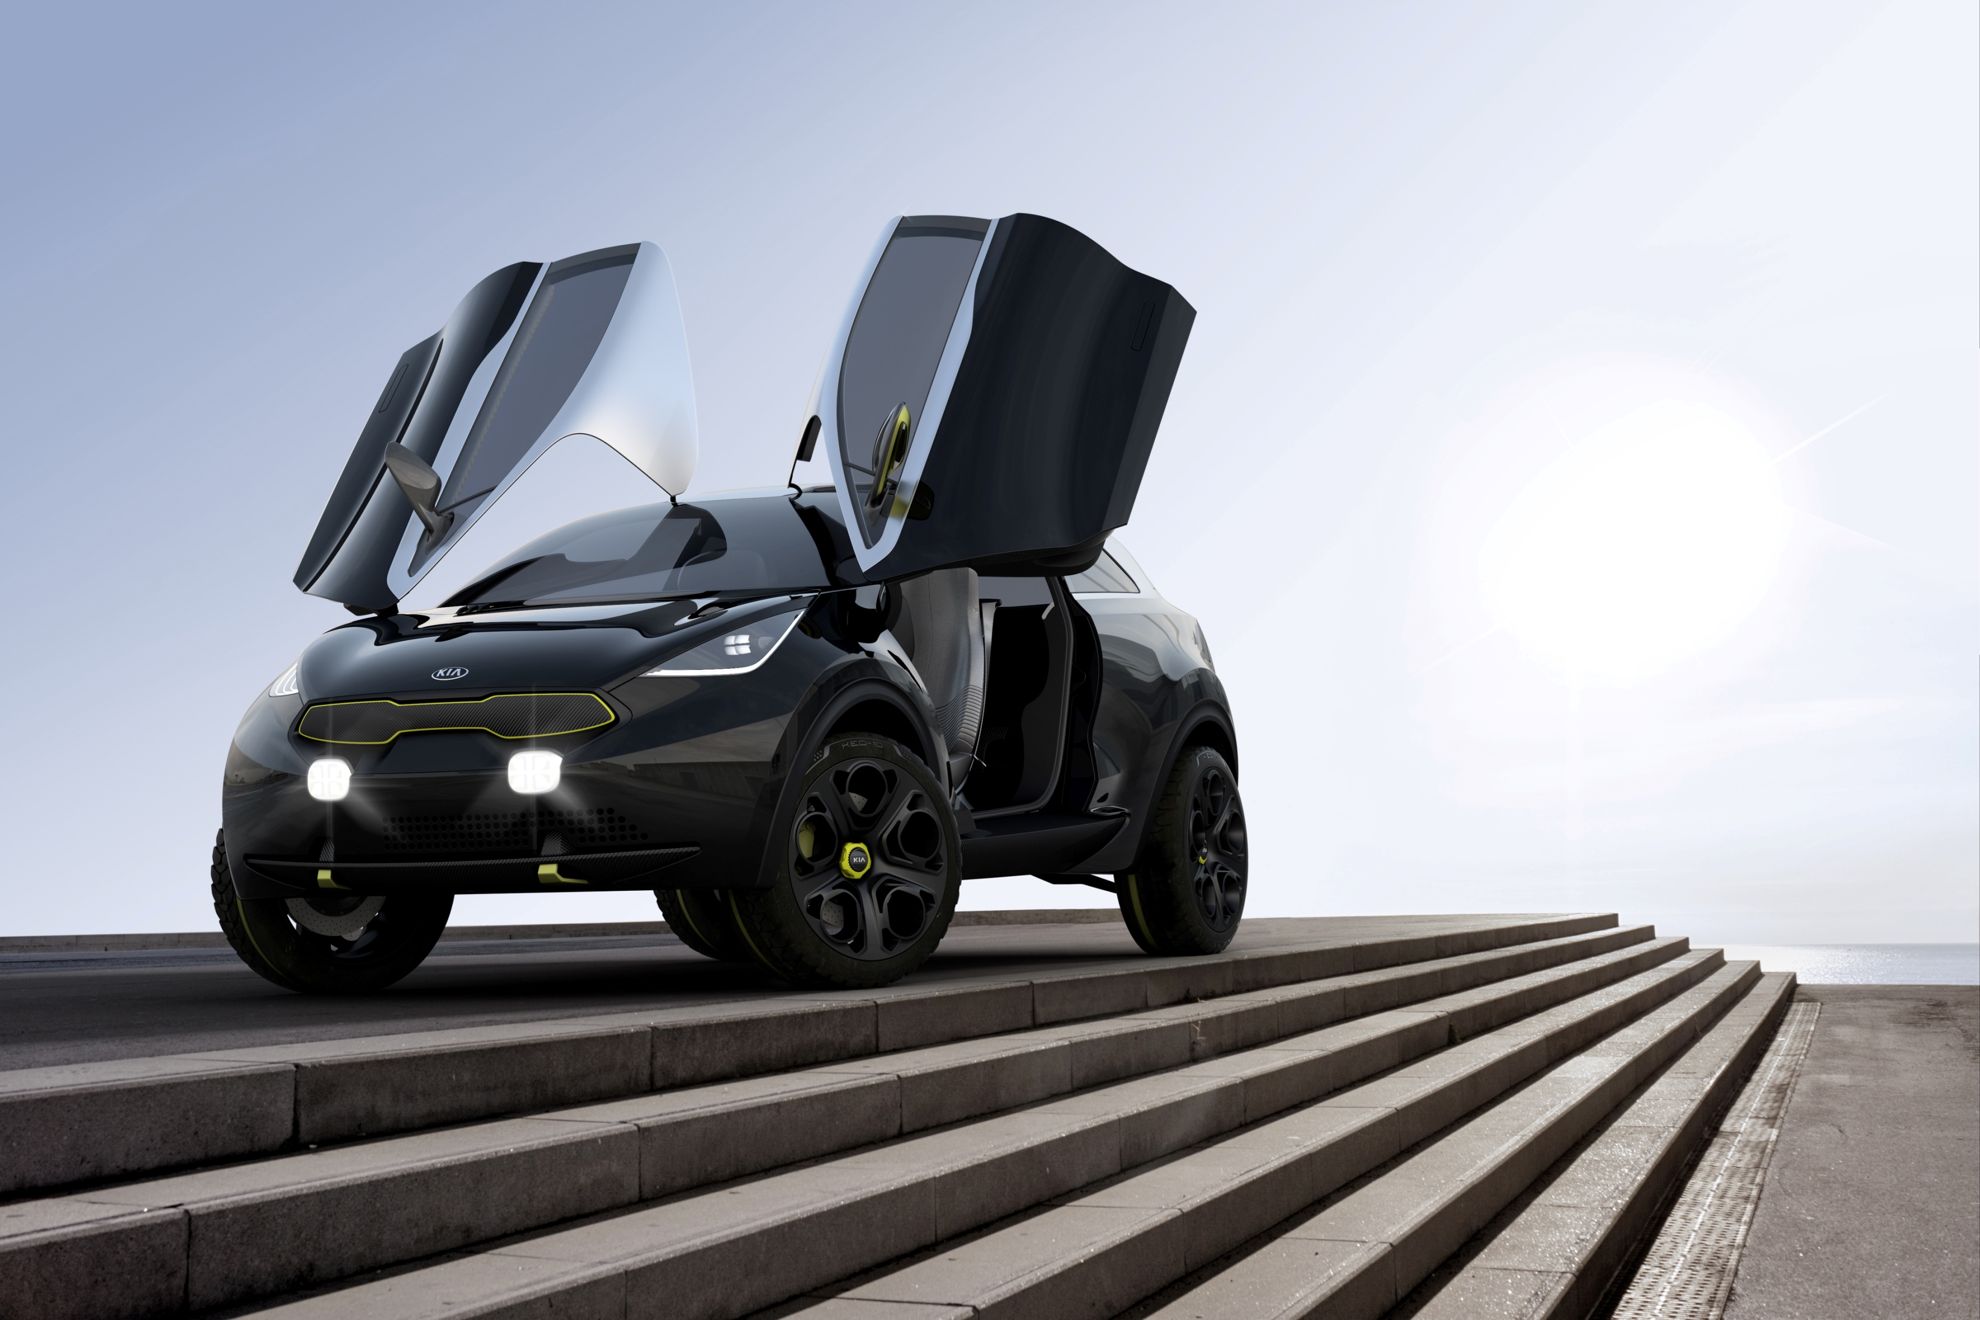 2014 Chicago Auto Show Kia Niro Concept Car Debut